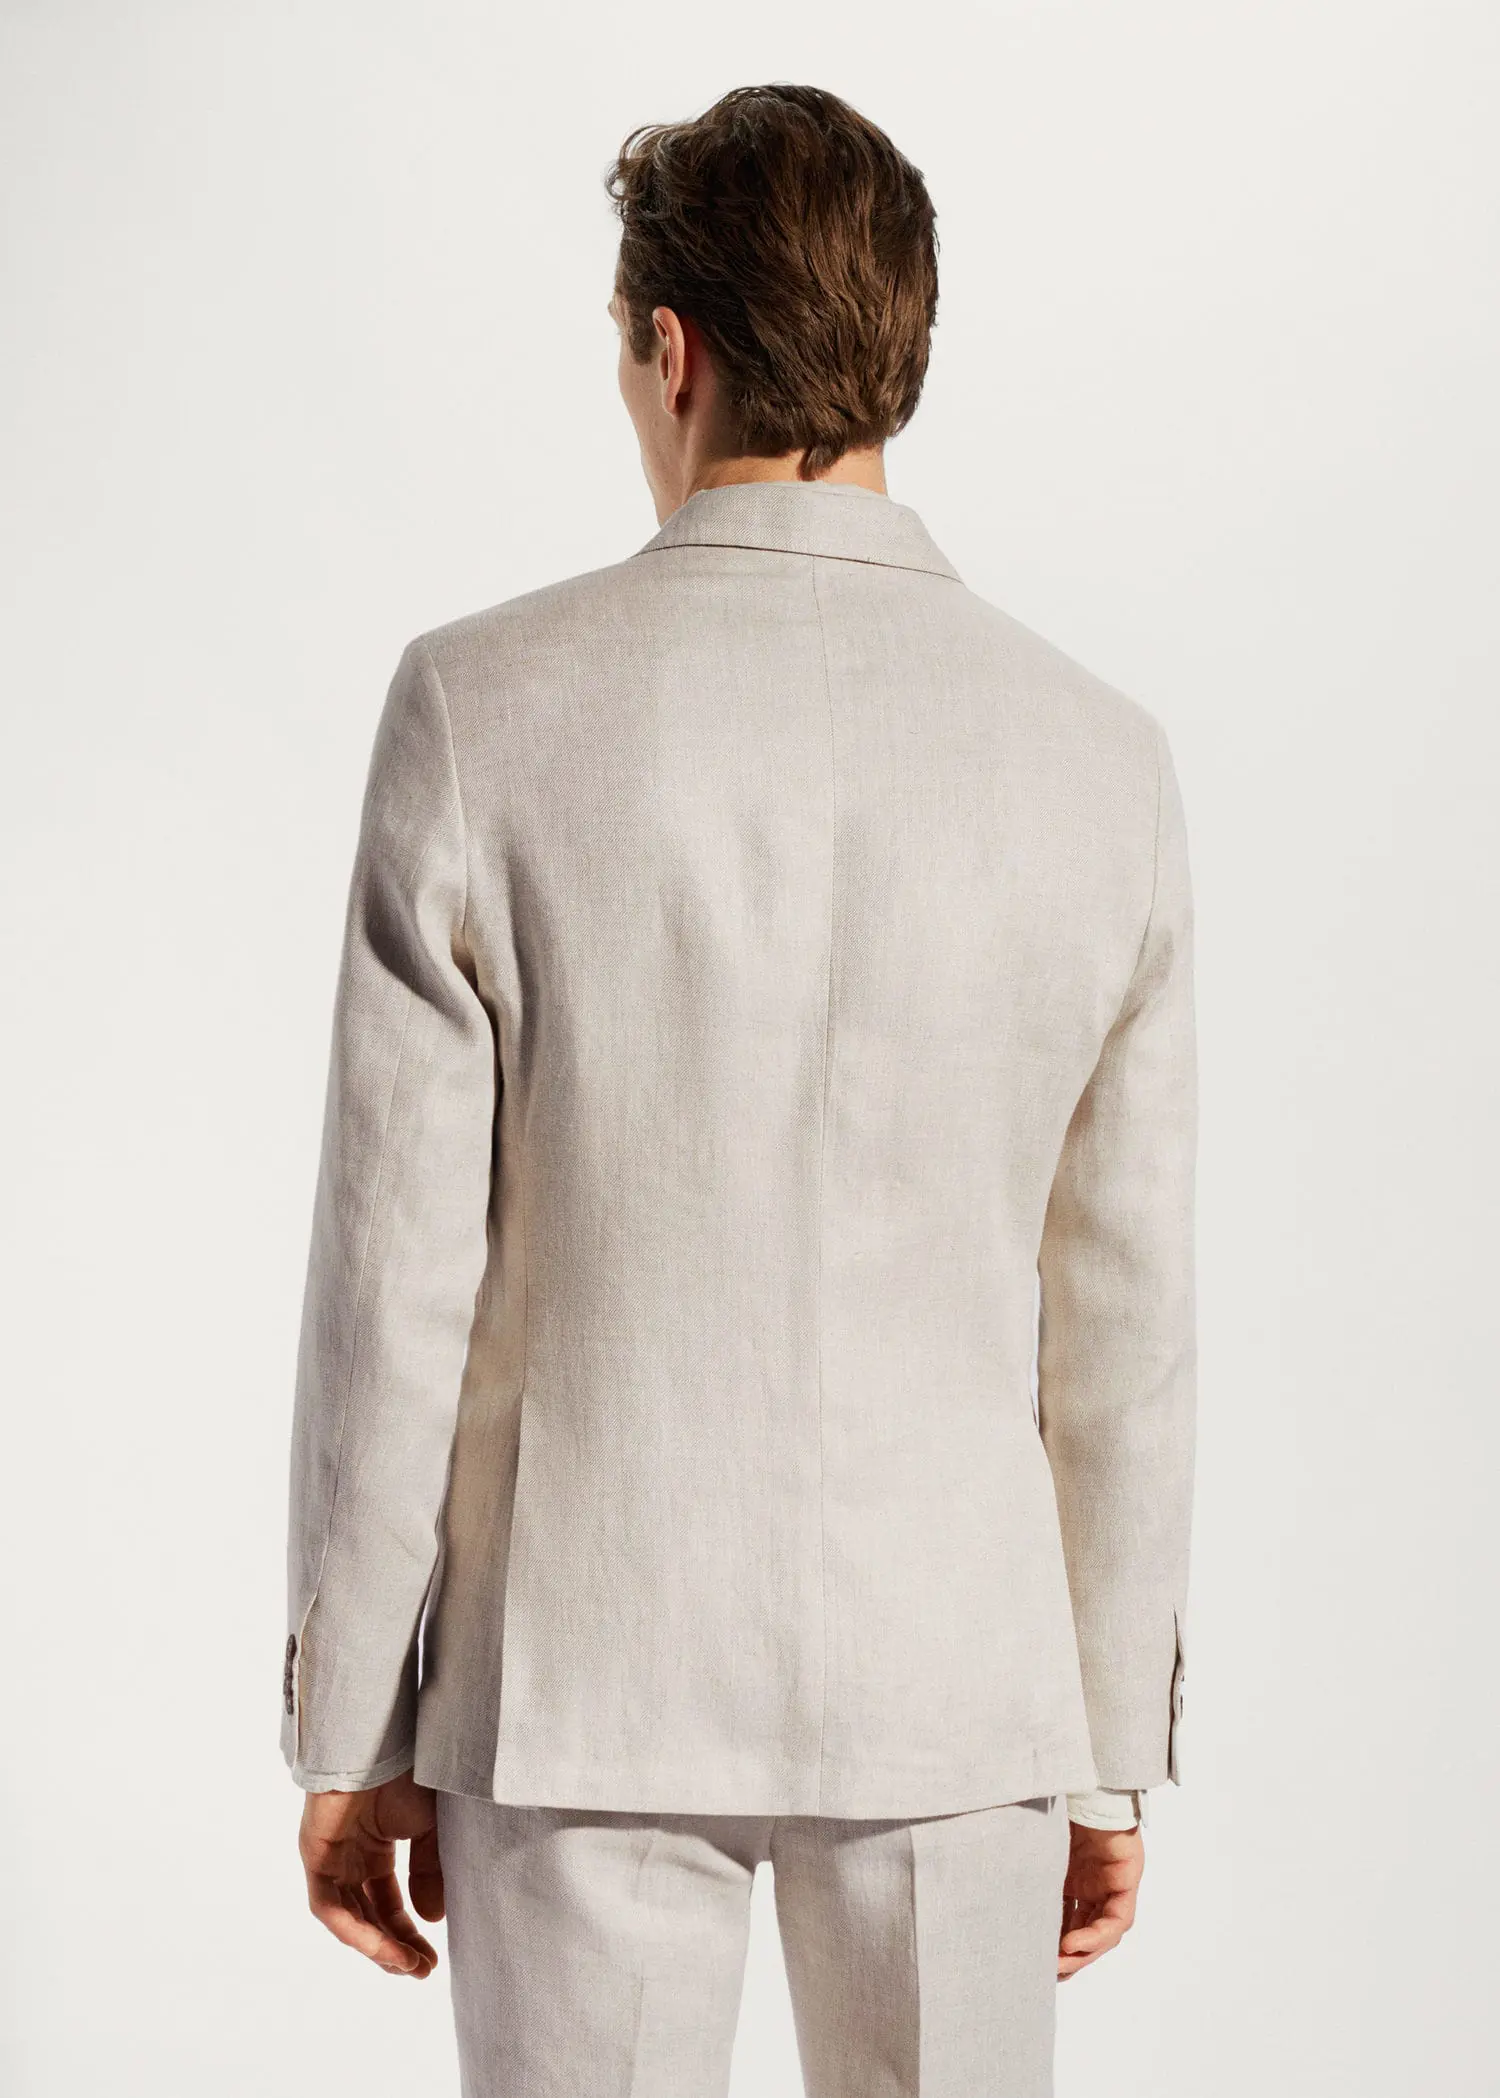 Mango 100% linen suit blazer. a man wearing a suit jacket and pants. 